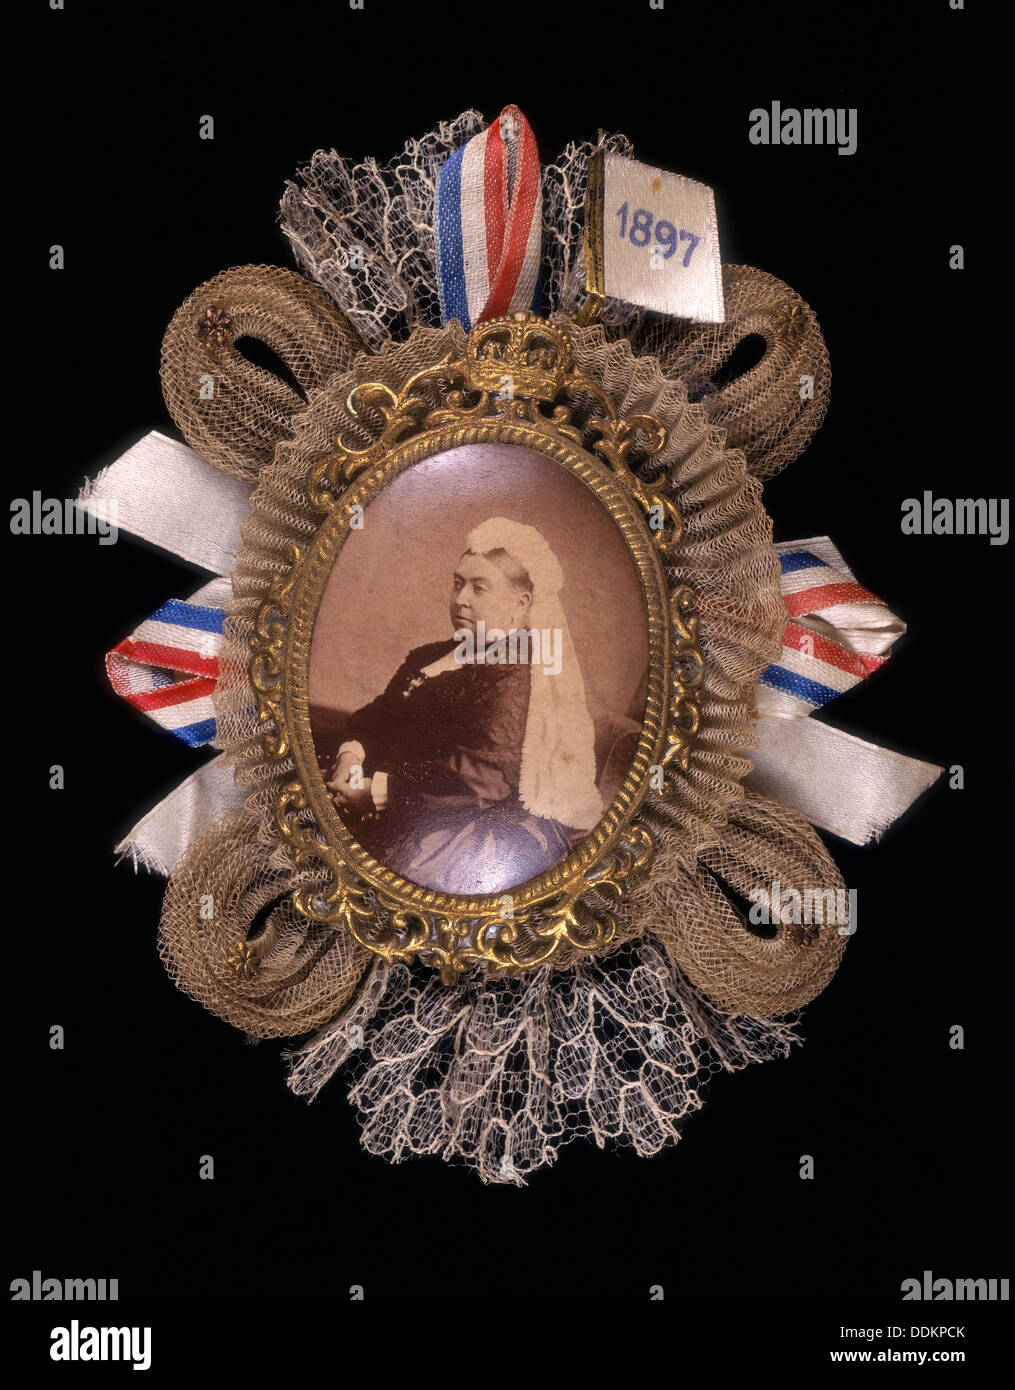 Brooch conmemorando la reina Victoria's Diamond Jubilee, 1897. Artista: Desconocido Foto de stock